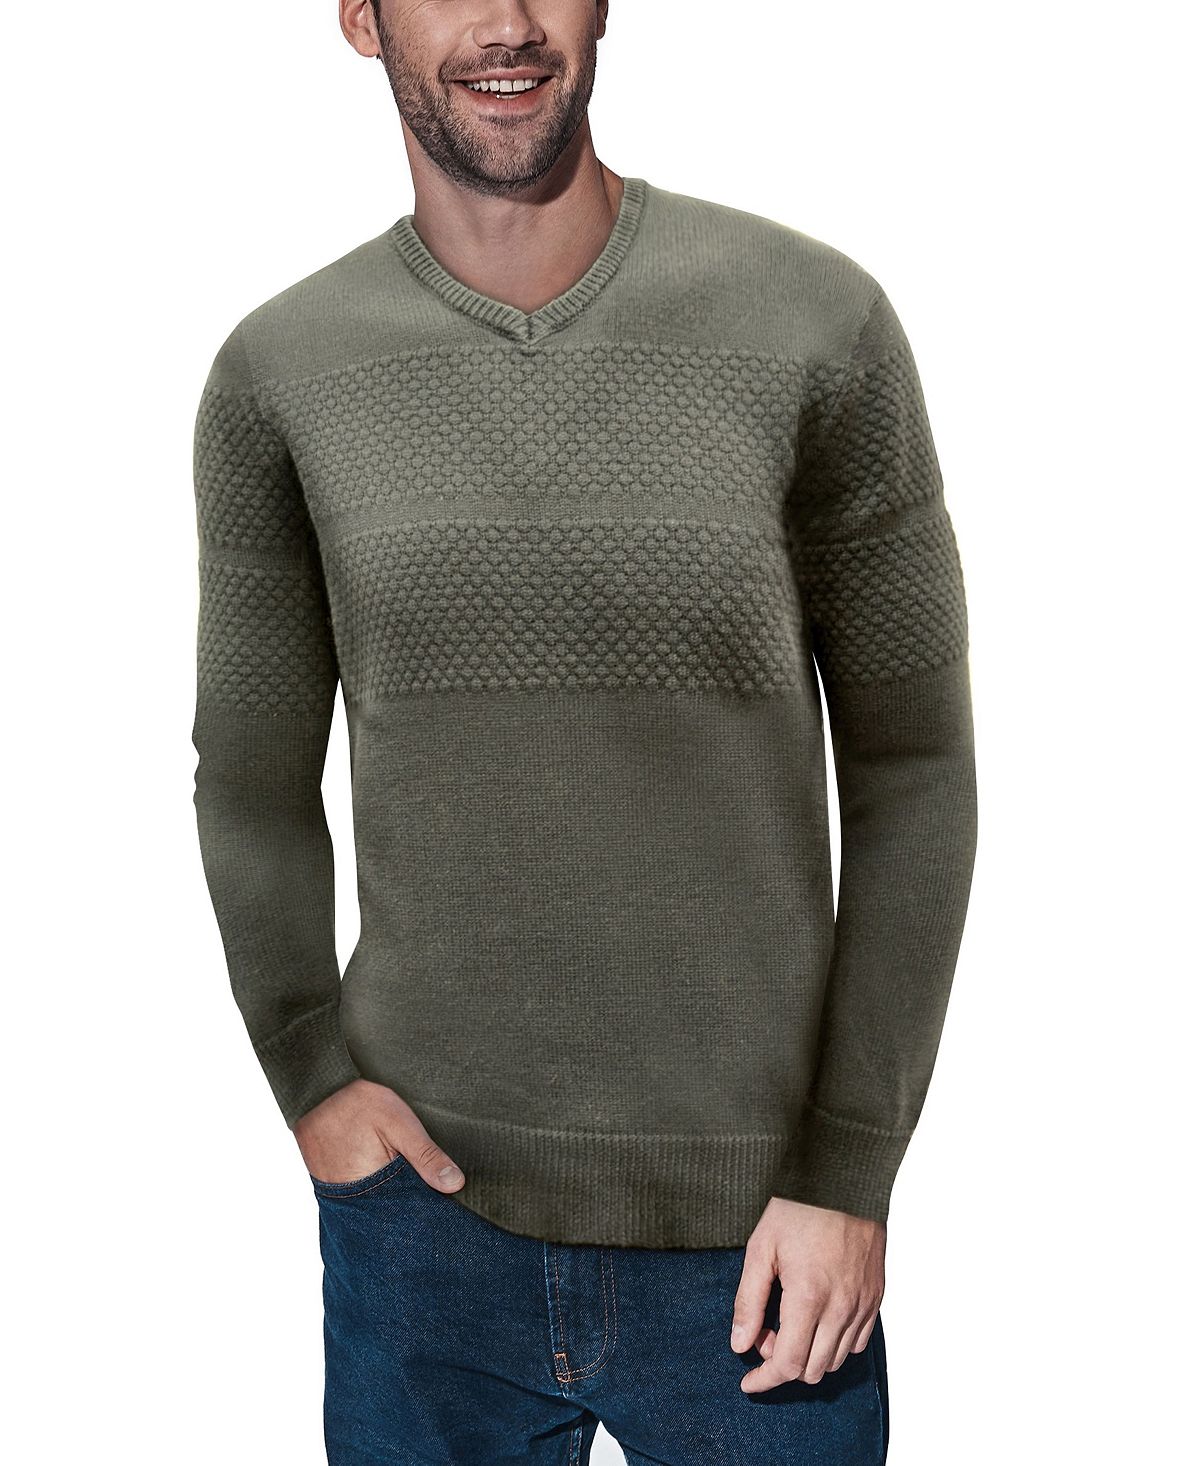 Мужской свитер сотовой вязки с v-образным вырезом X-Ray женский пуловер с вышивкой и v образным вырезом